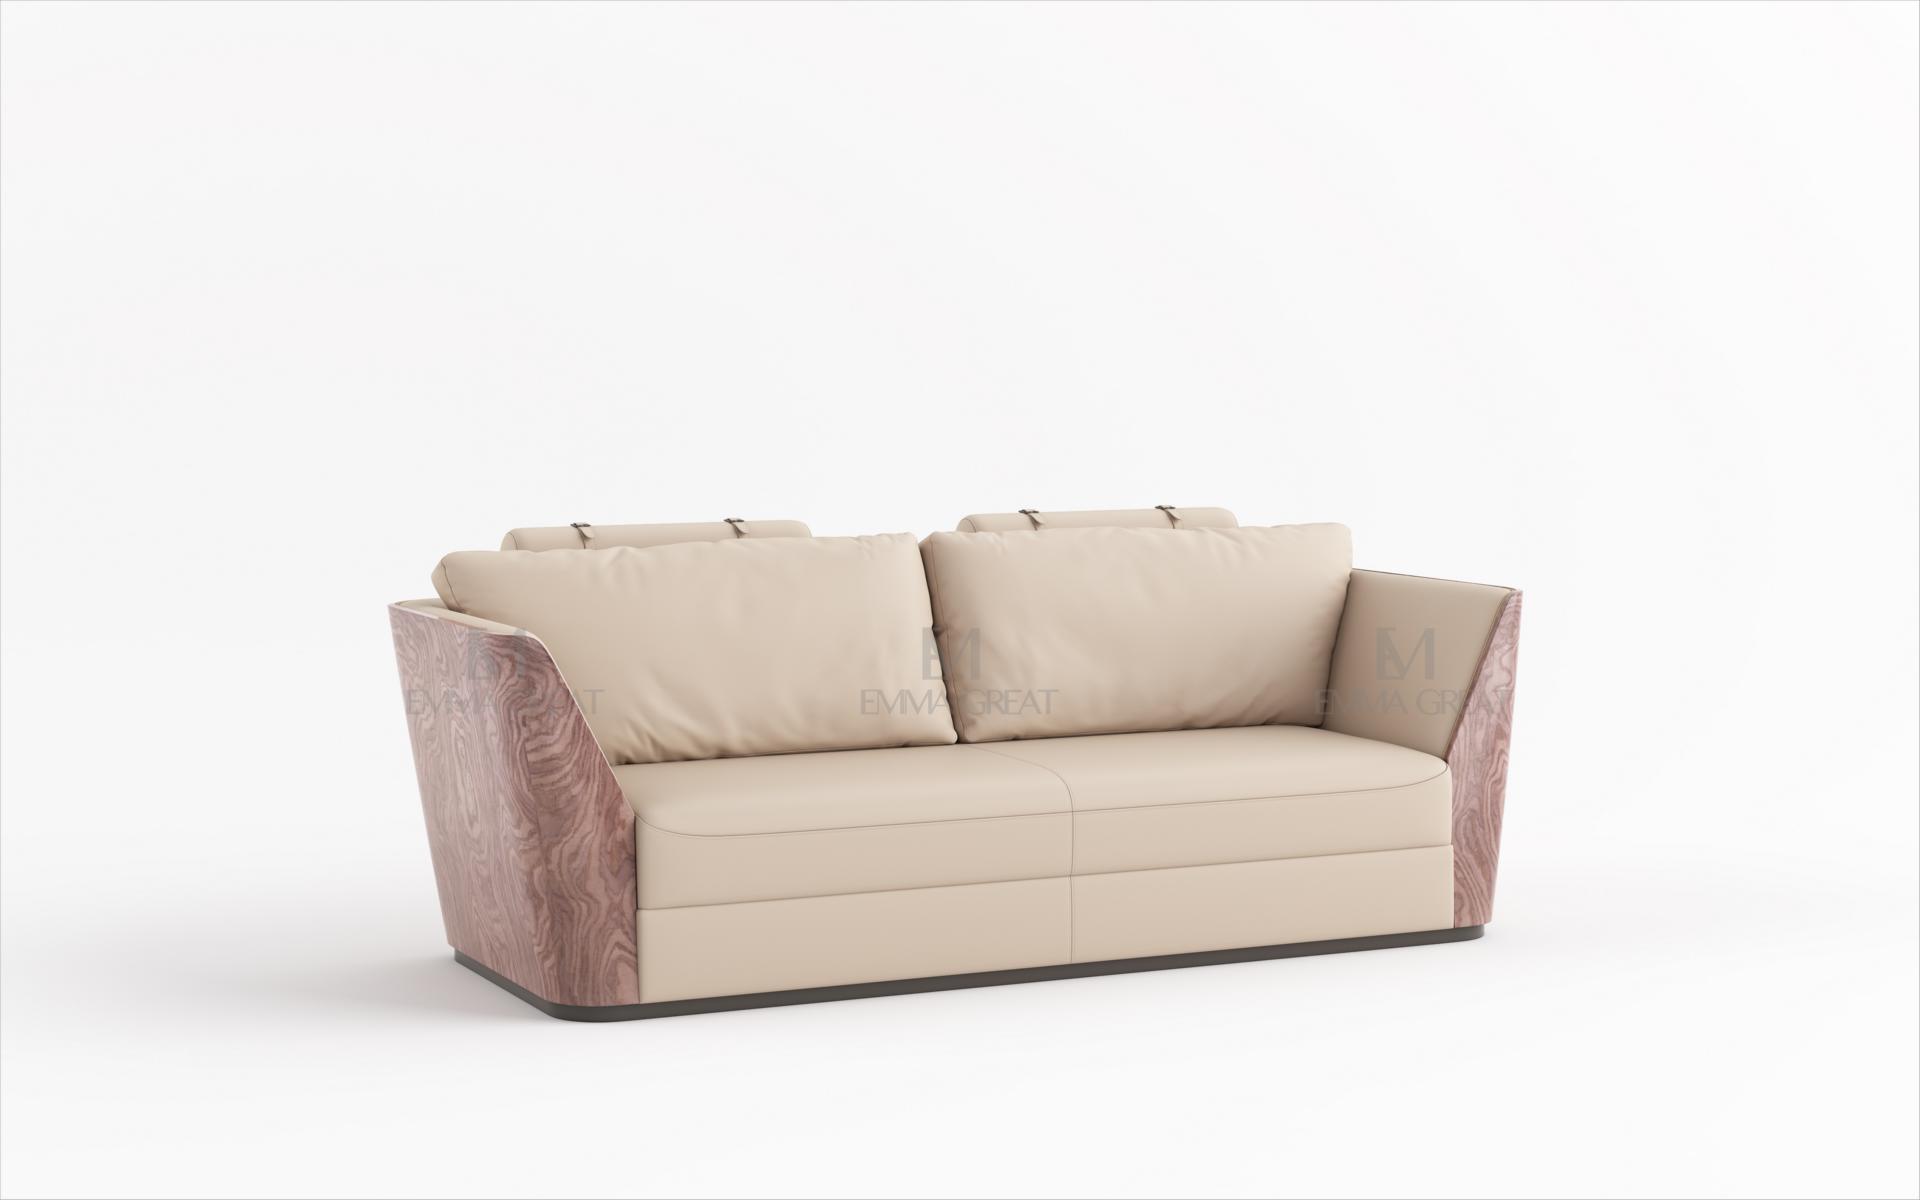 Design Zweisitzer Lounge Möbel 2 Sitzer Sofa Couch Polster Club Couchen Sofa